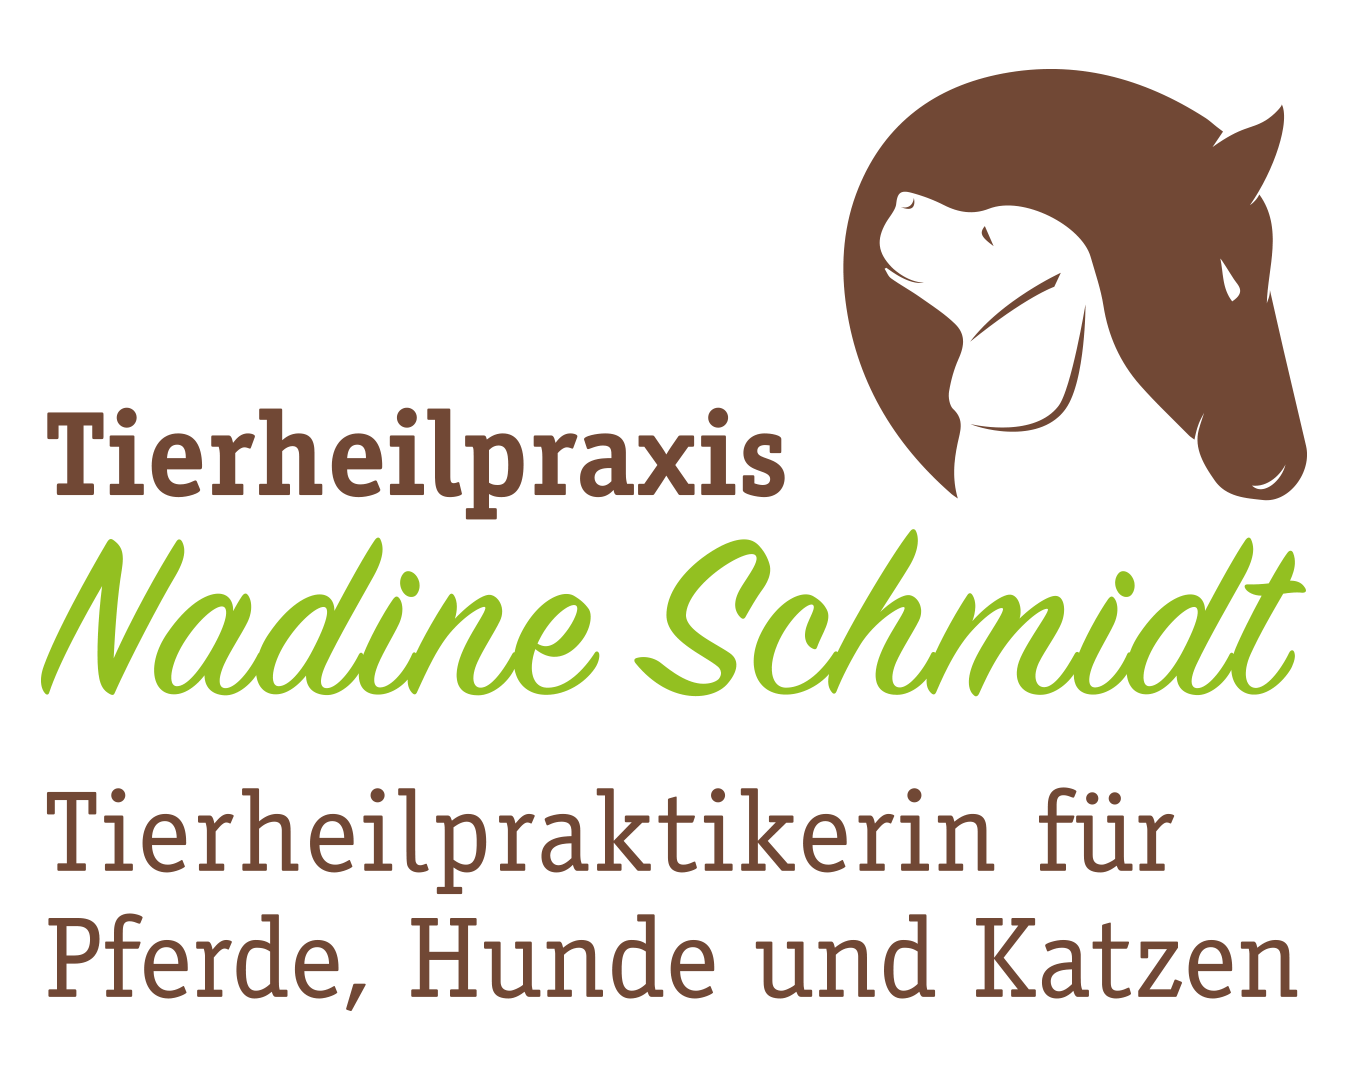 Tierheilpraxis Nadine Schmidt